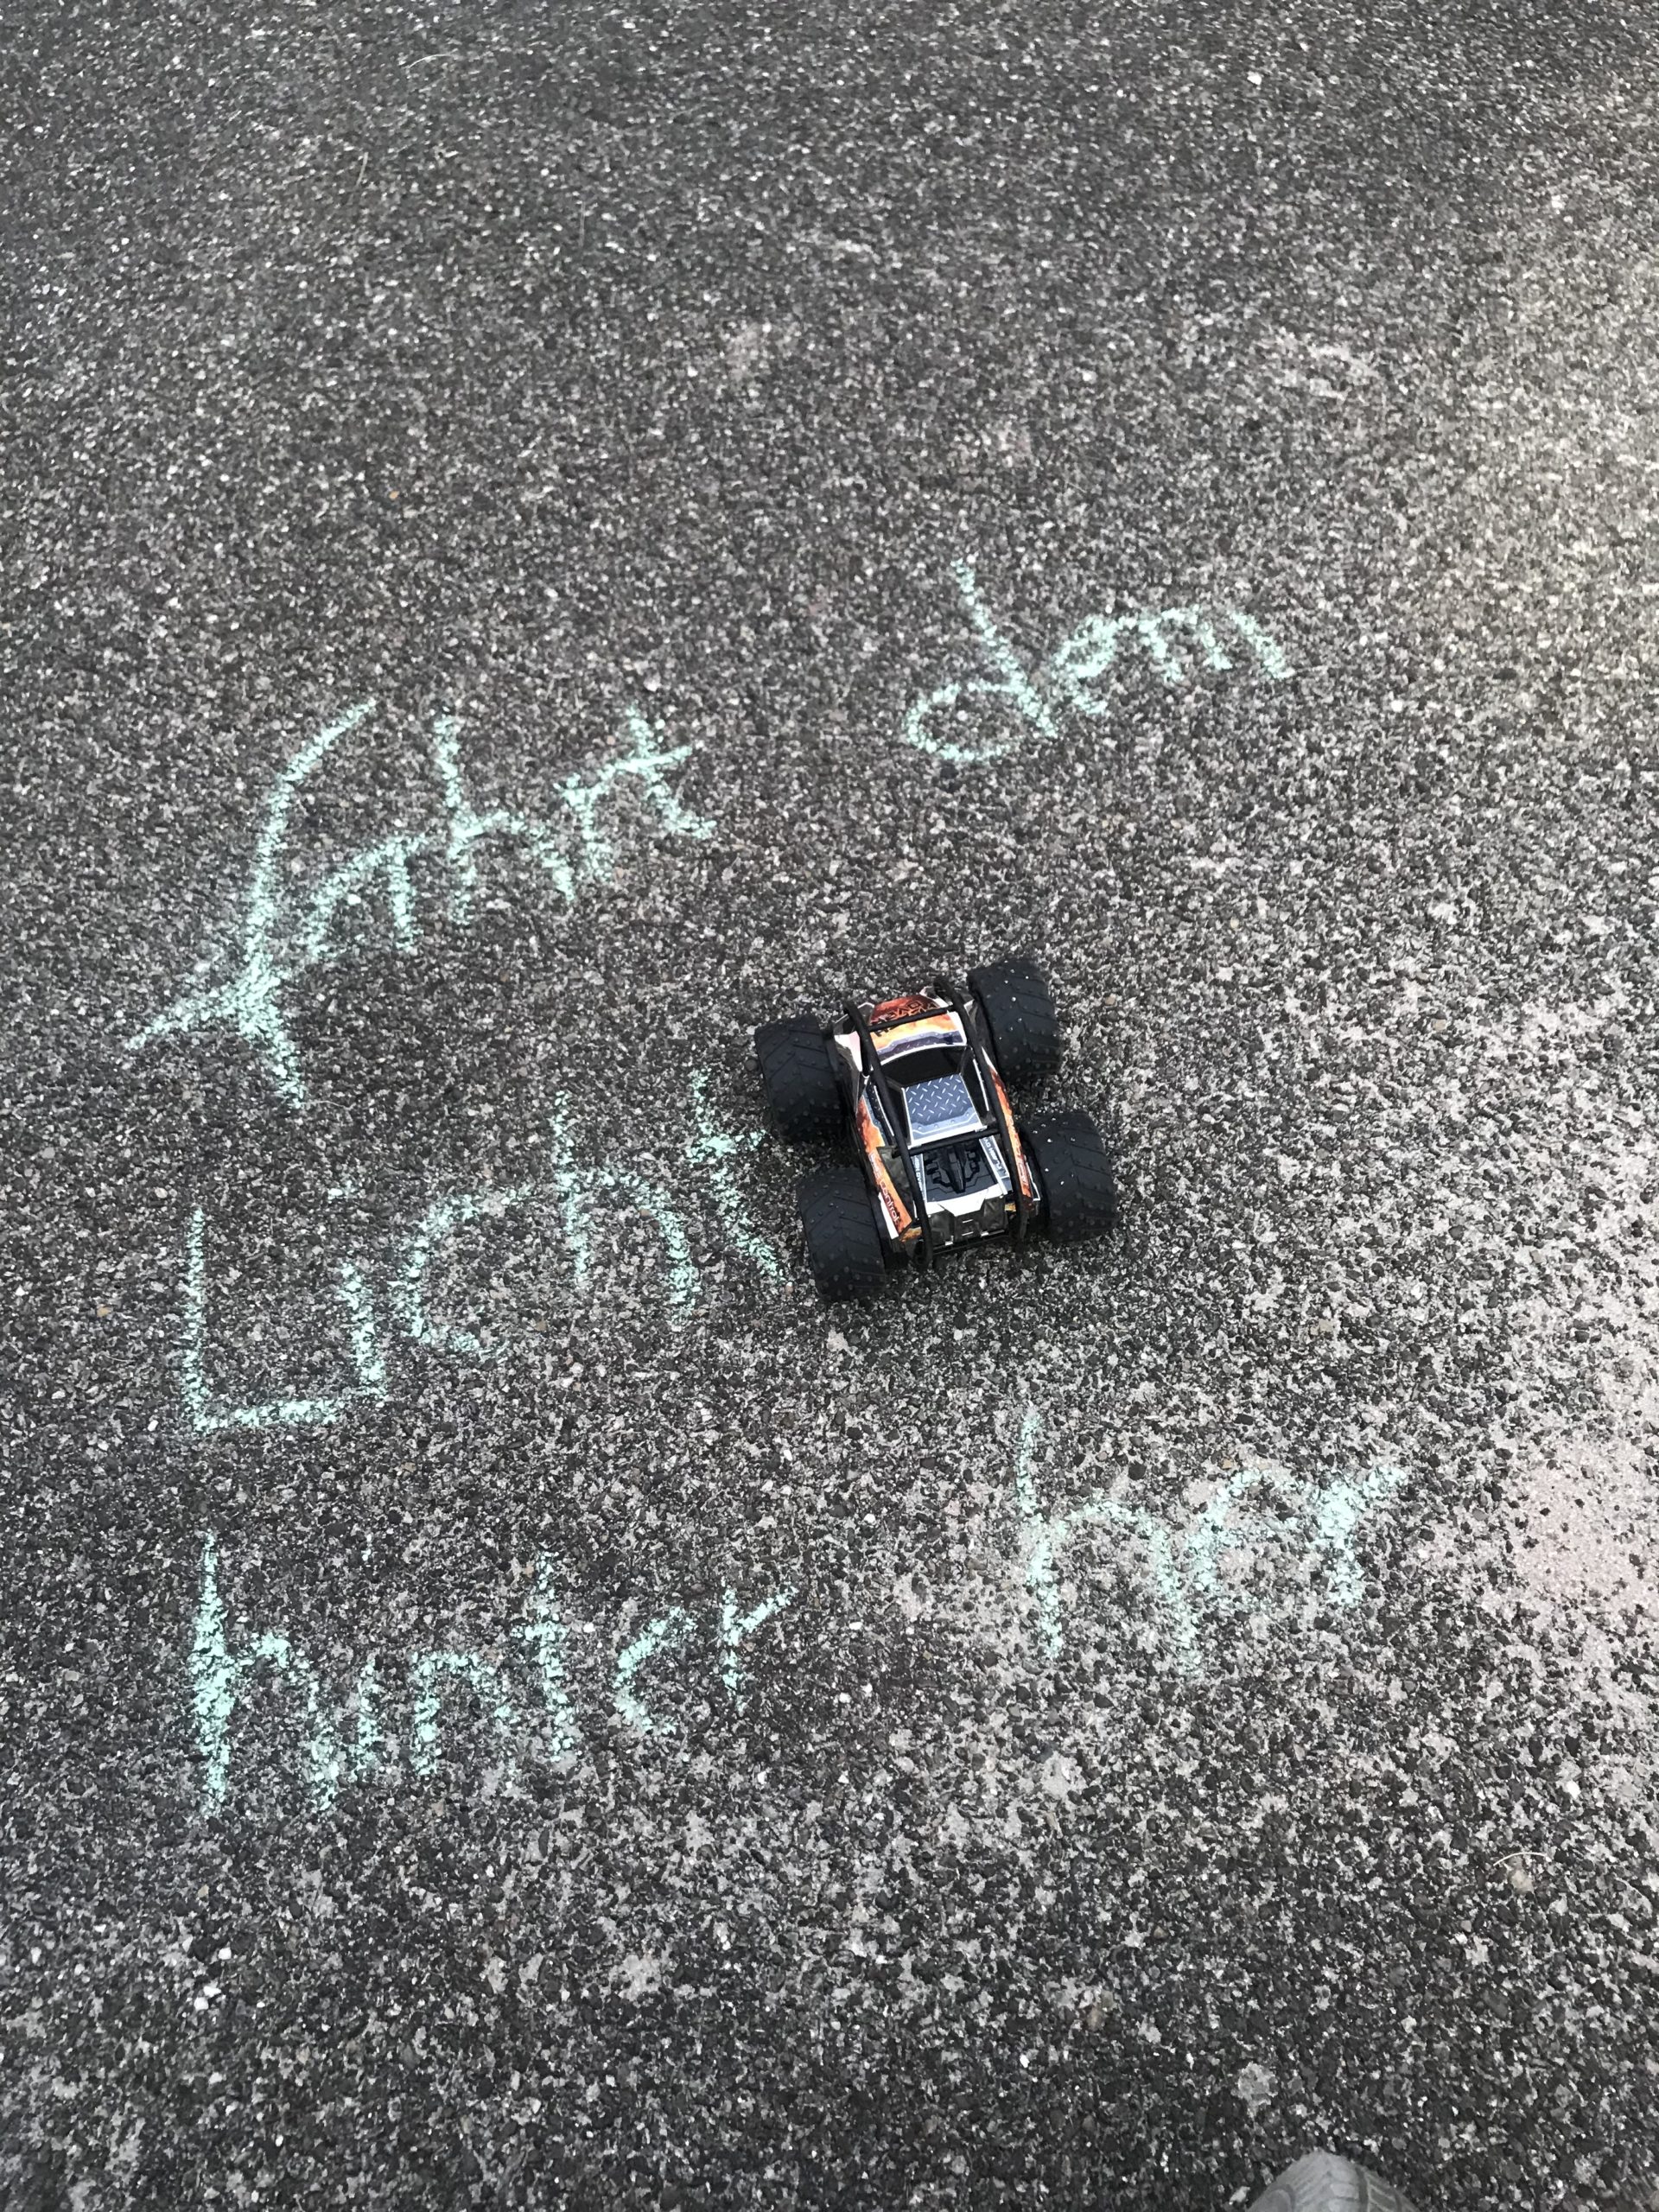 Ein Spielzeugauto und auf dem Boden mit Starßenkreide die Anweisung: Fahrt dem Licht hinterher 